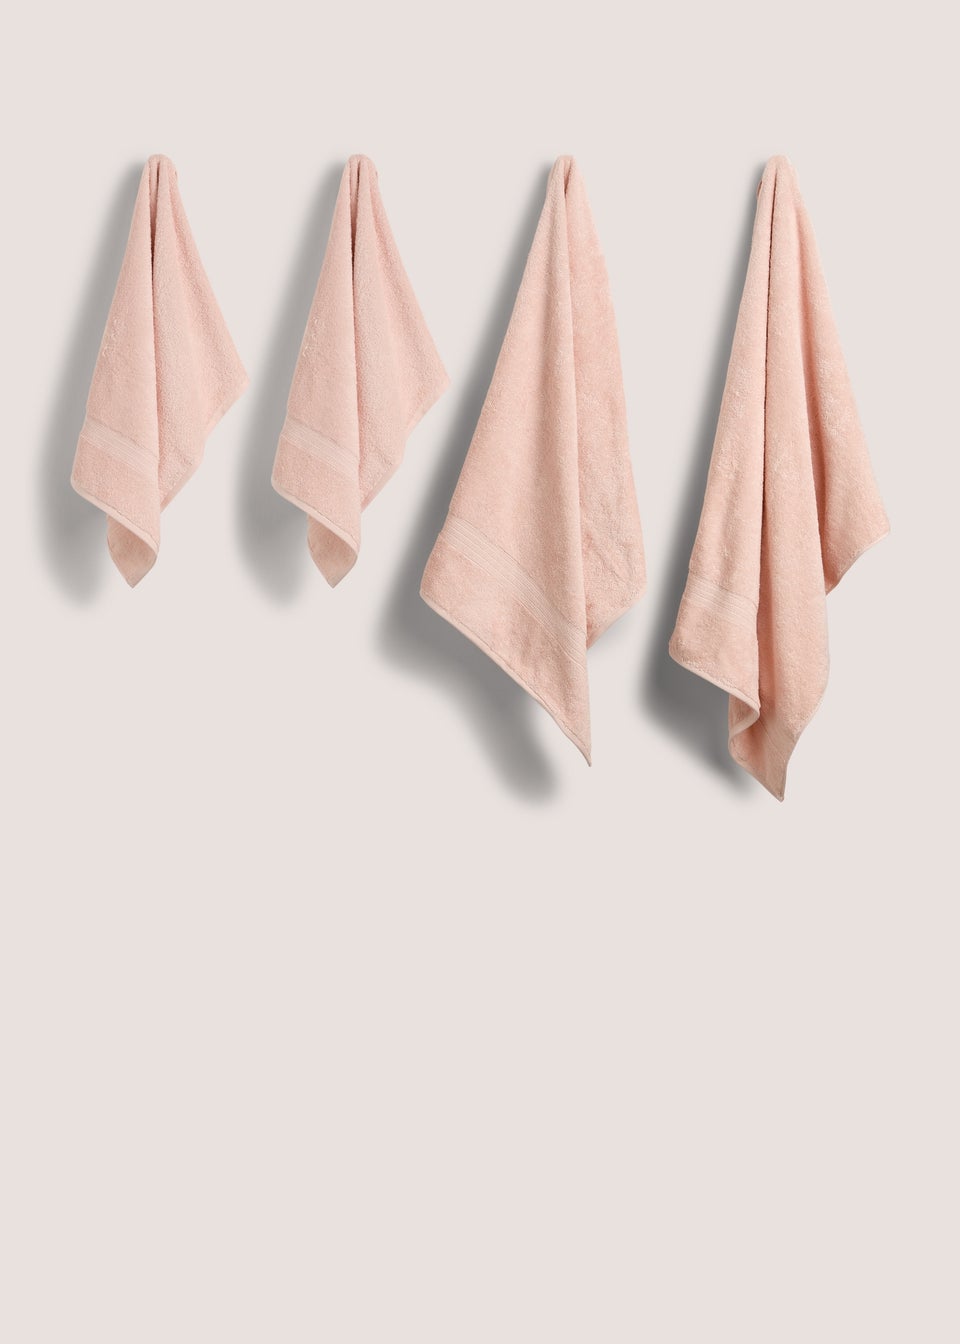 4 комплекта розового набора полотенец для рук и ванны Homestore, розовый